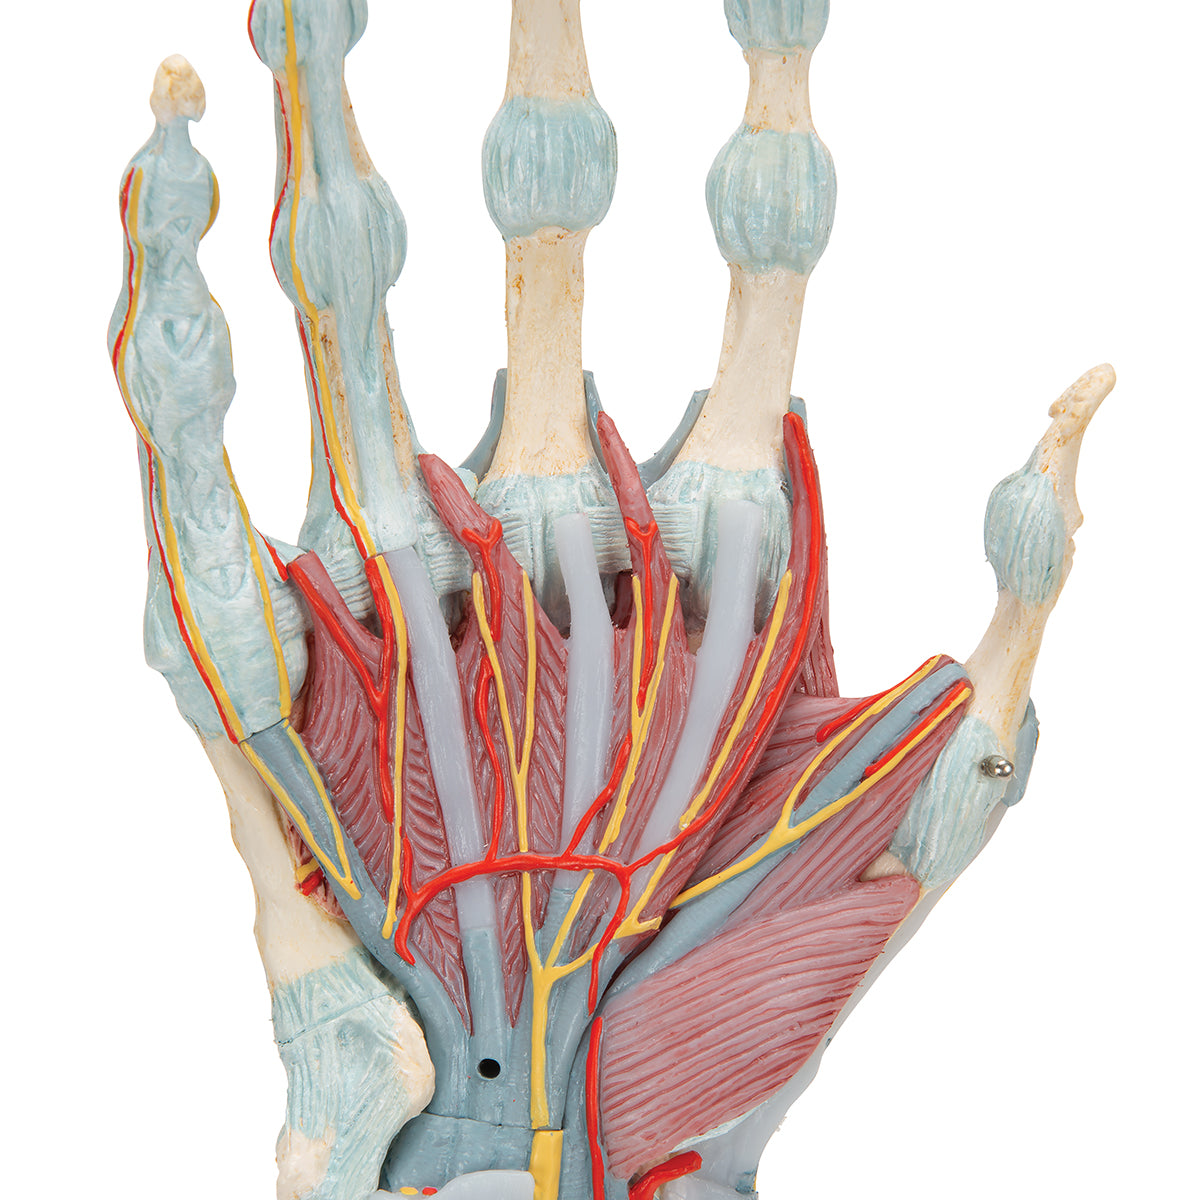 Komplet håndmodel med ledbånd, muskler, sener, kar og nerver - kan adskilles i 4 dele